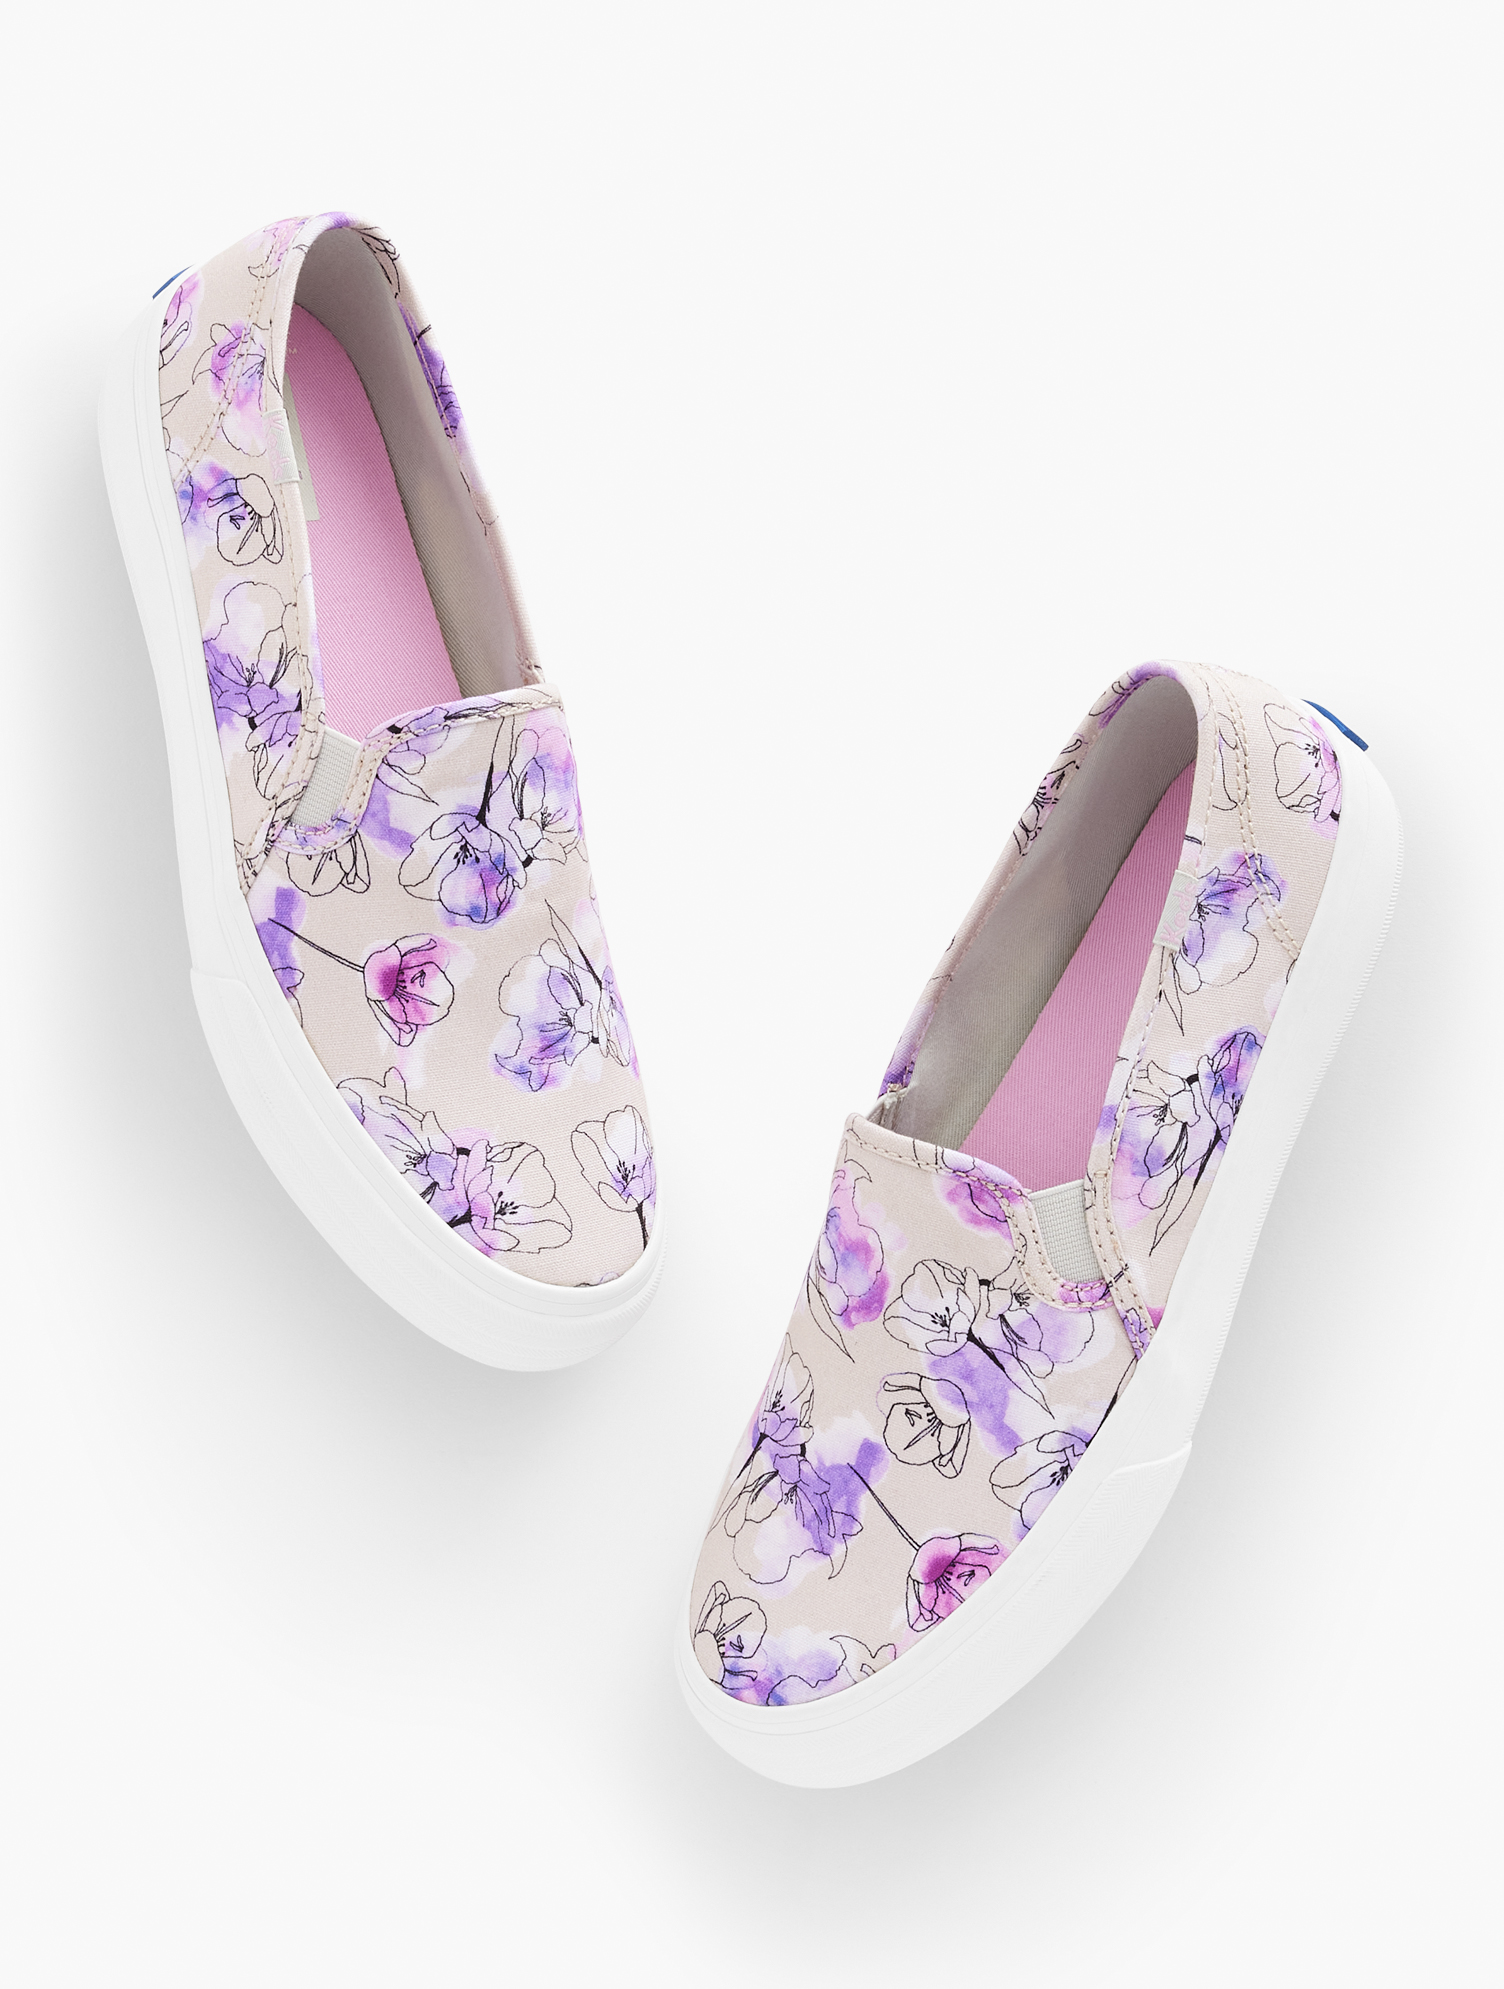 Keds Â® Double Decker Slip-on Sneakers - Watercolor - Grey/purple - 9m - 100% Cotton Talbots In Grey,purple